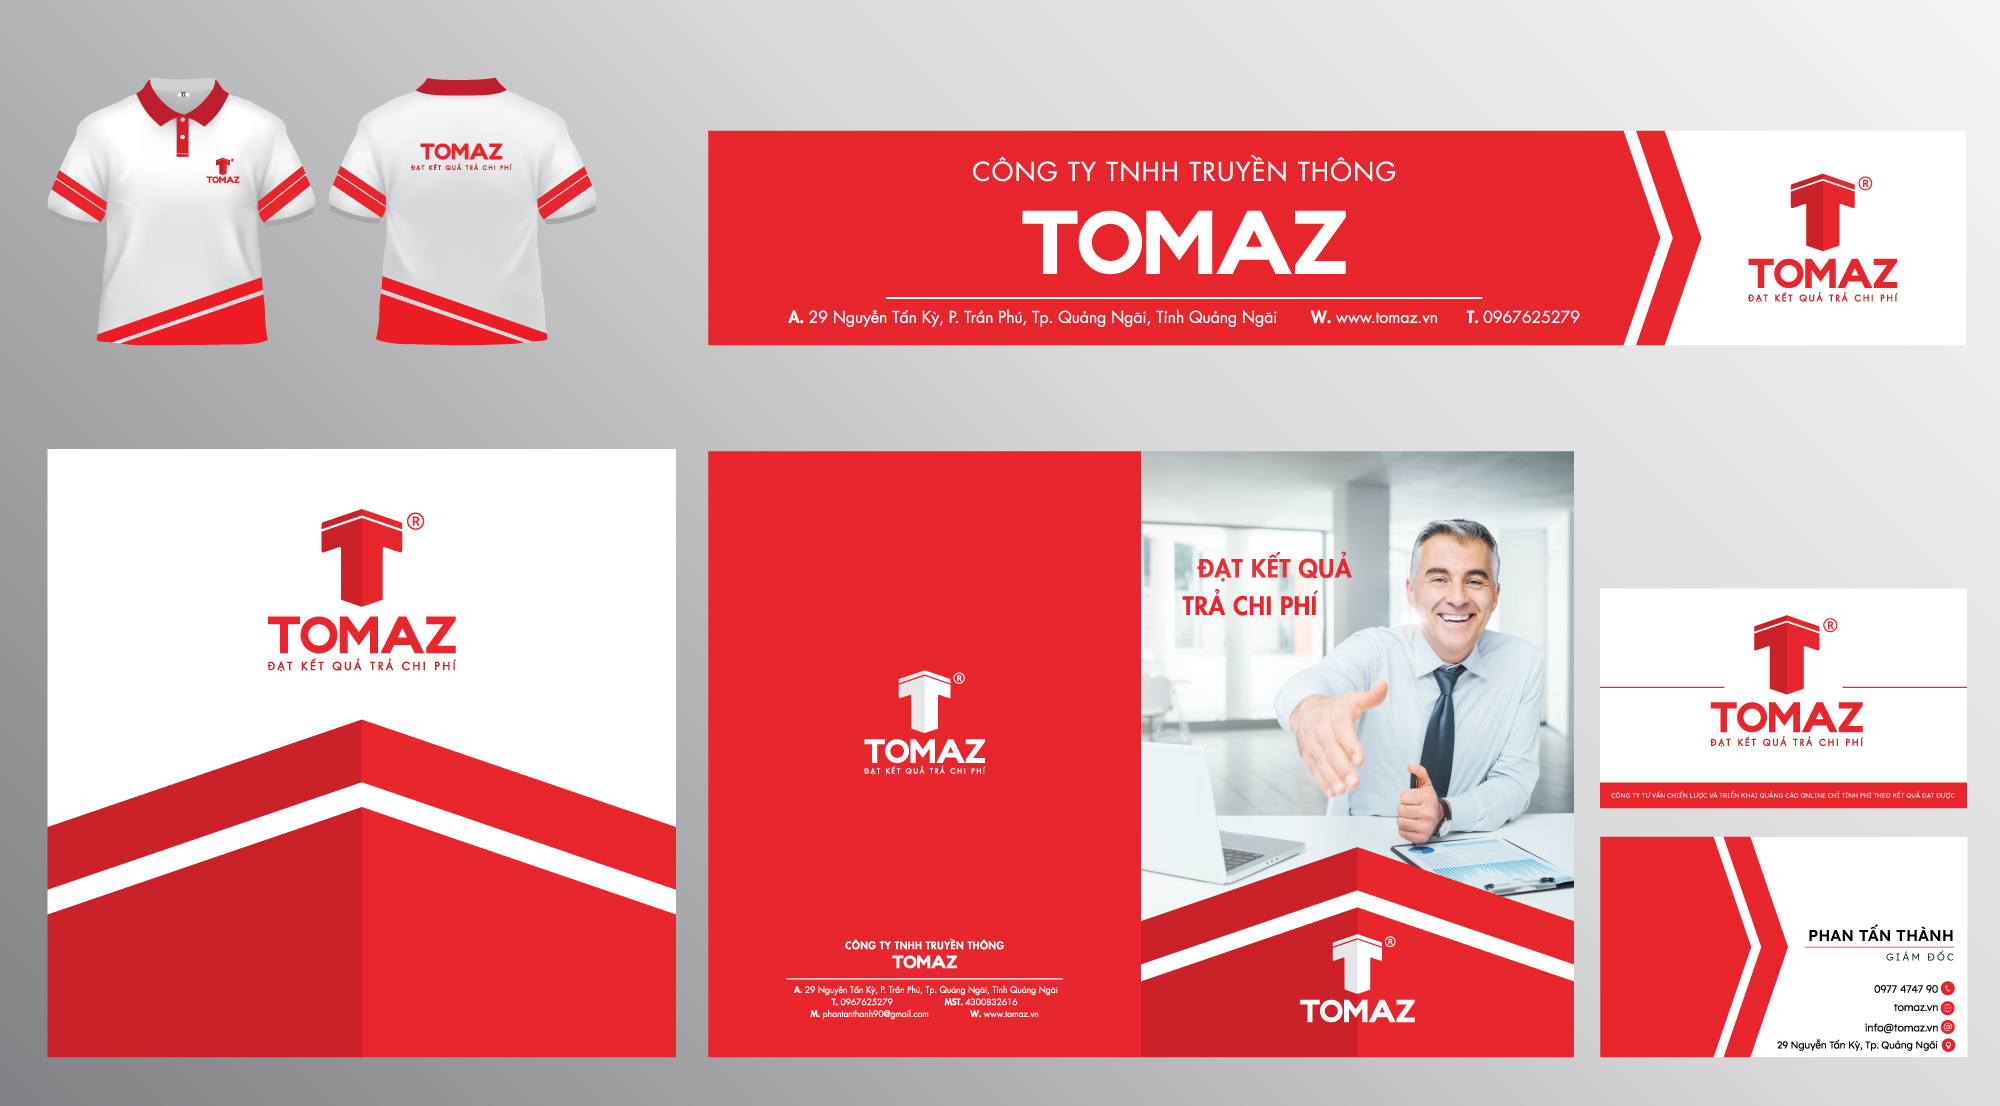 TOMAZ - Thông báo thay đổi logo nhận diện thương hiệu